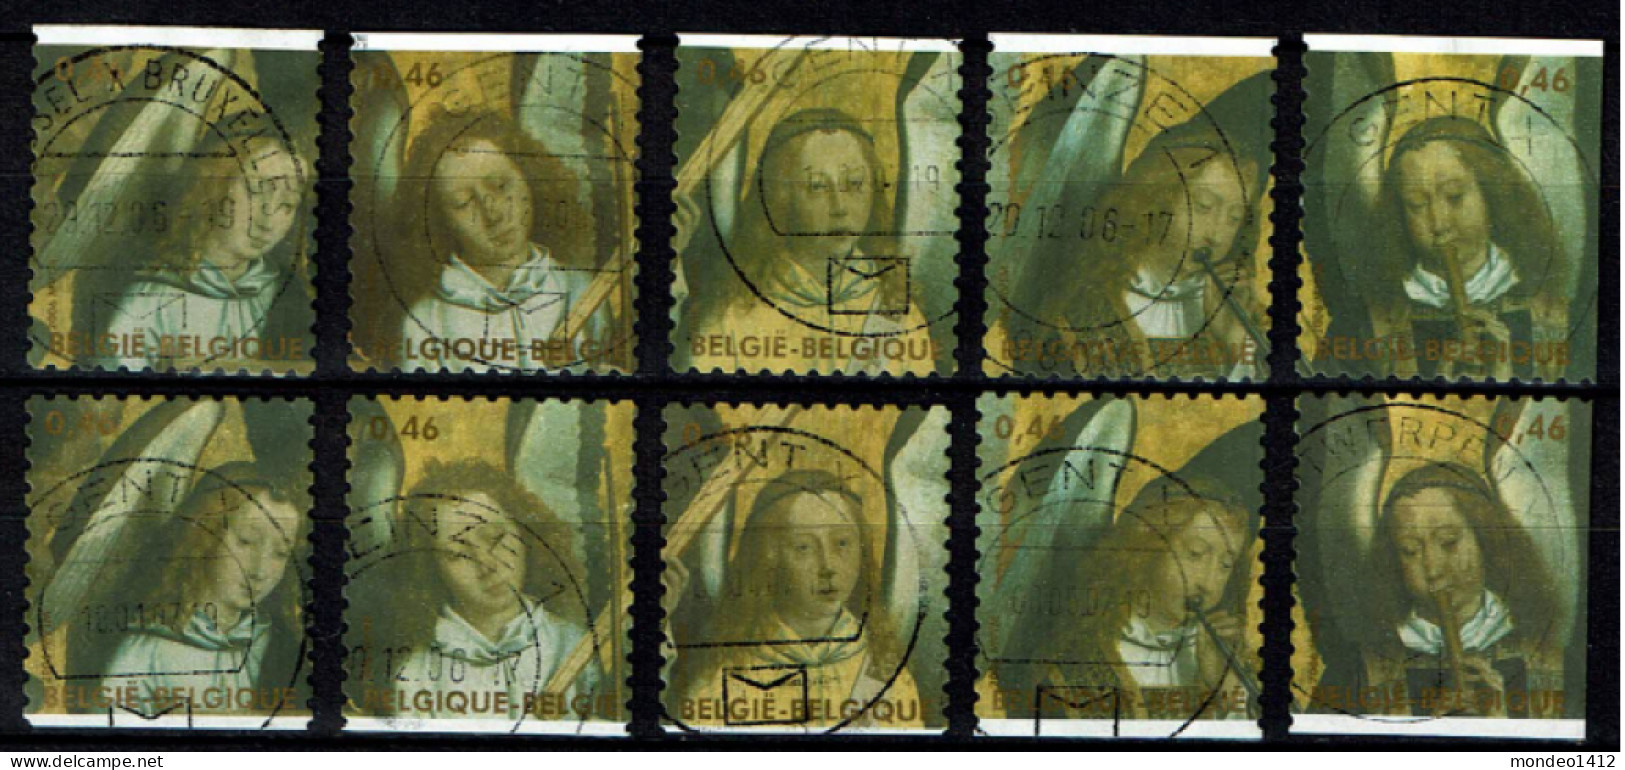 België OBP 3594/3598 - Zegels Uit Boekje B70 - Engelen Hans Memling, Kunstschilder - Used Stamps